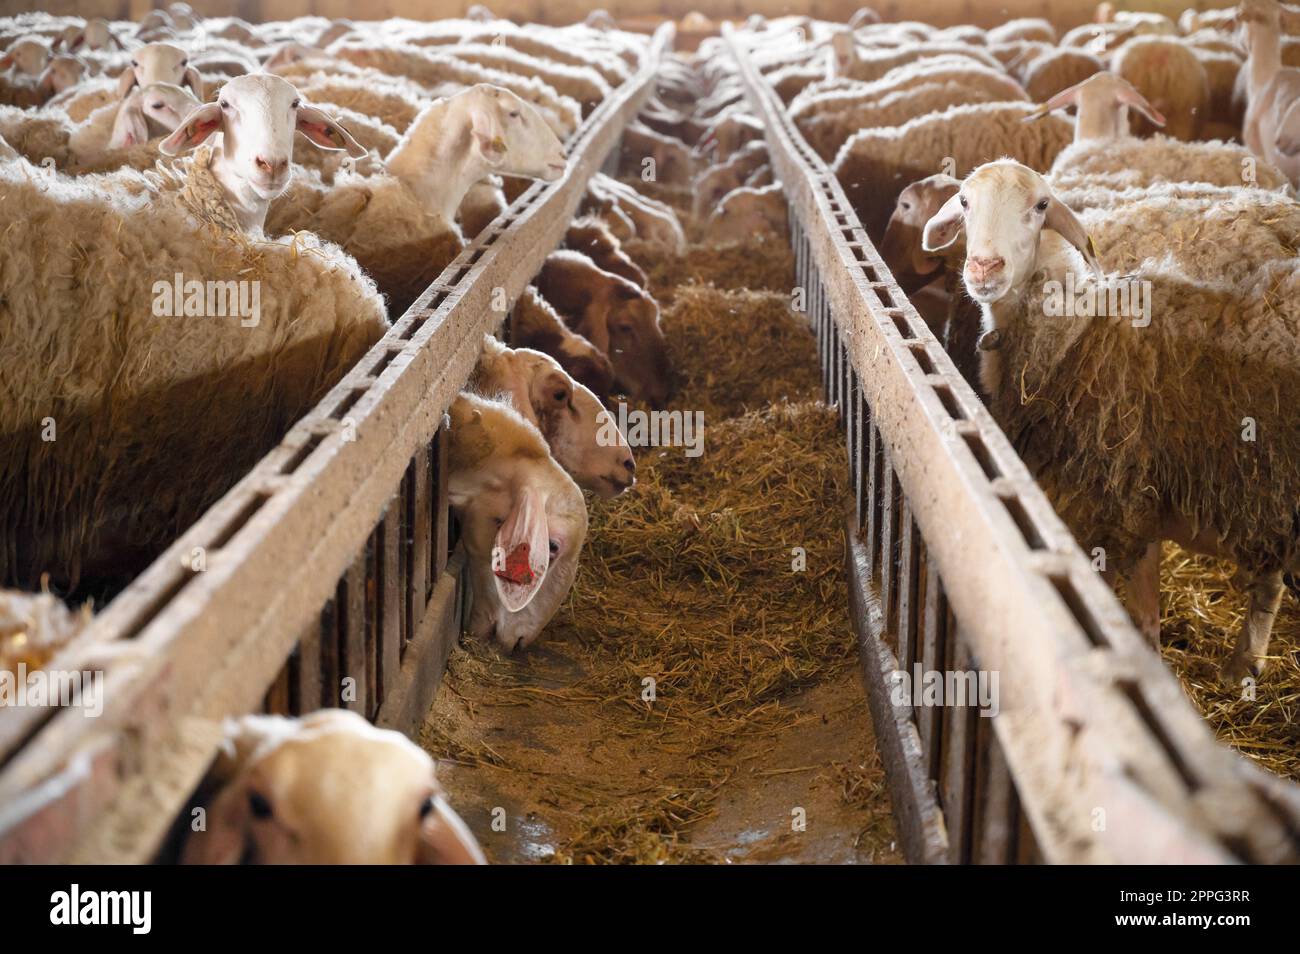 Moutons mangeant du foin dans le hangar. Animaux domestiques se nourrissant à stable. Concept d'alimentation du bétail. Élevage. Banque D'Images